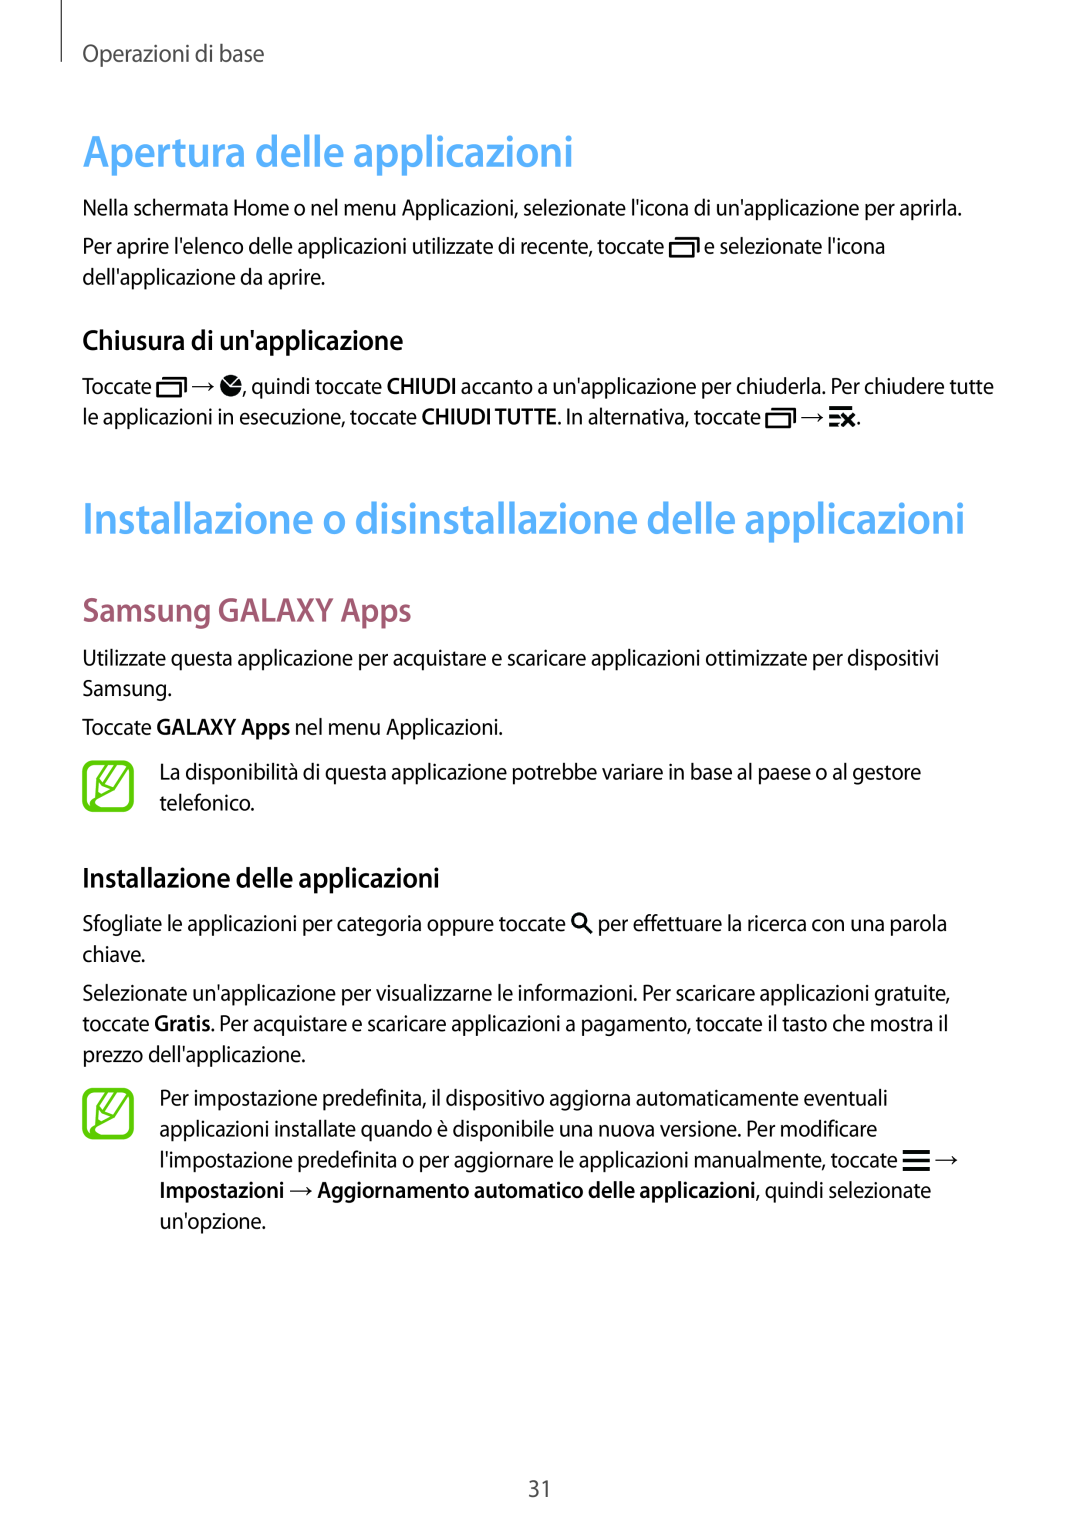 Samsung SM-G900FZKAITV, SM-G900FZKADBT Apertura delle applicazioni, Installazione o disinstallazione delle applicazioni 